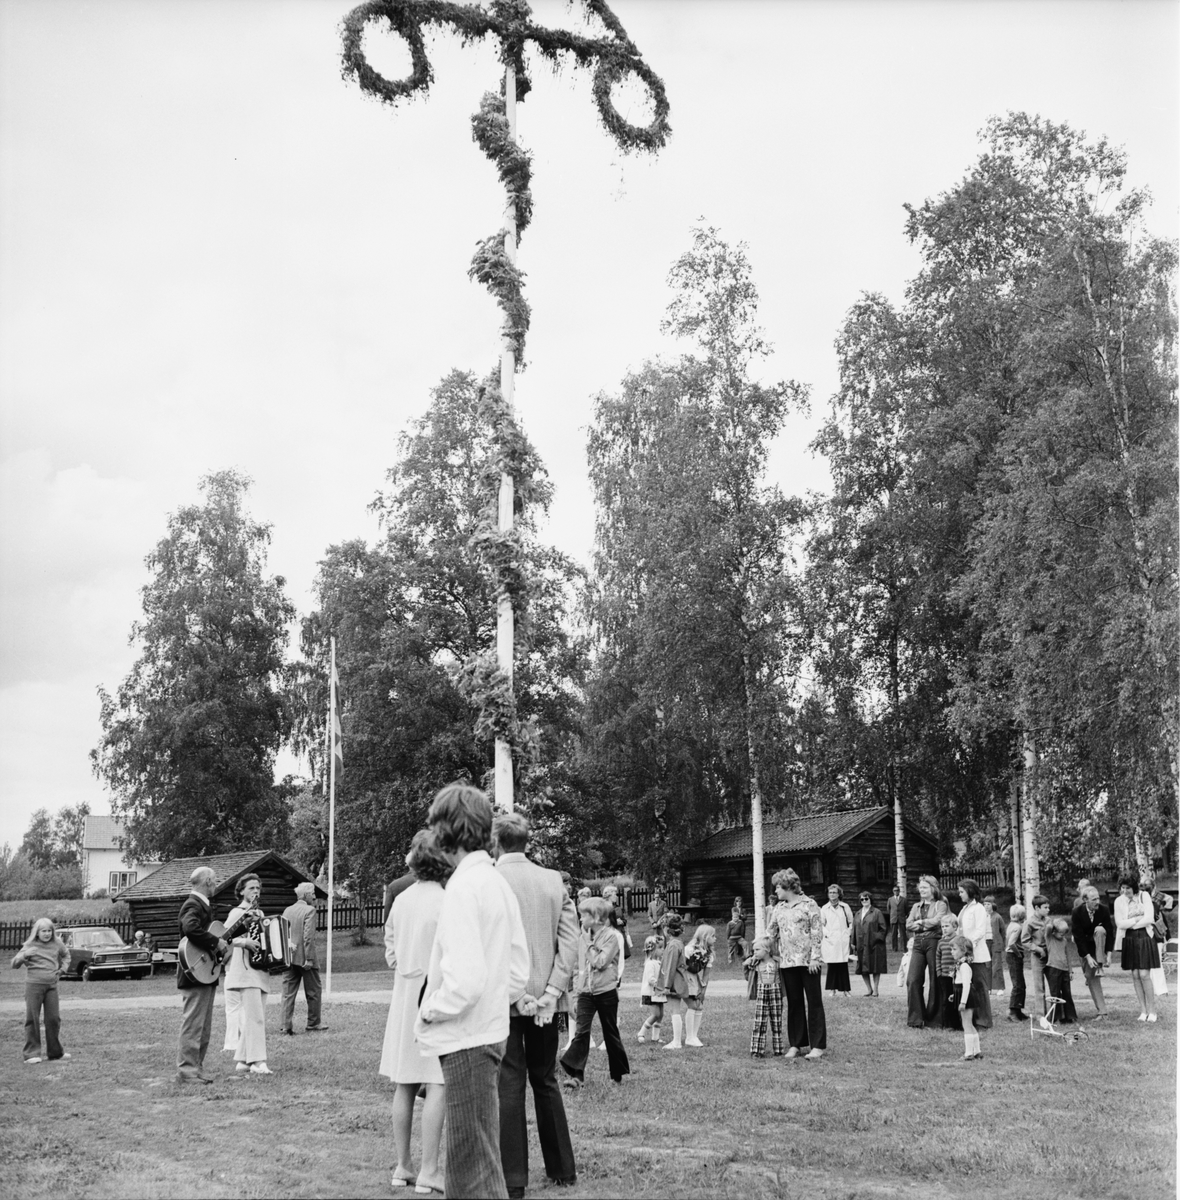 Fornhemmet
Midsommarfest, juni 1972